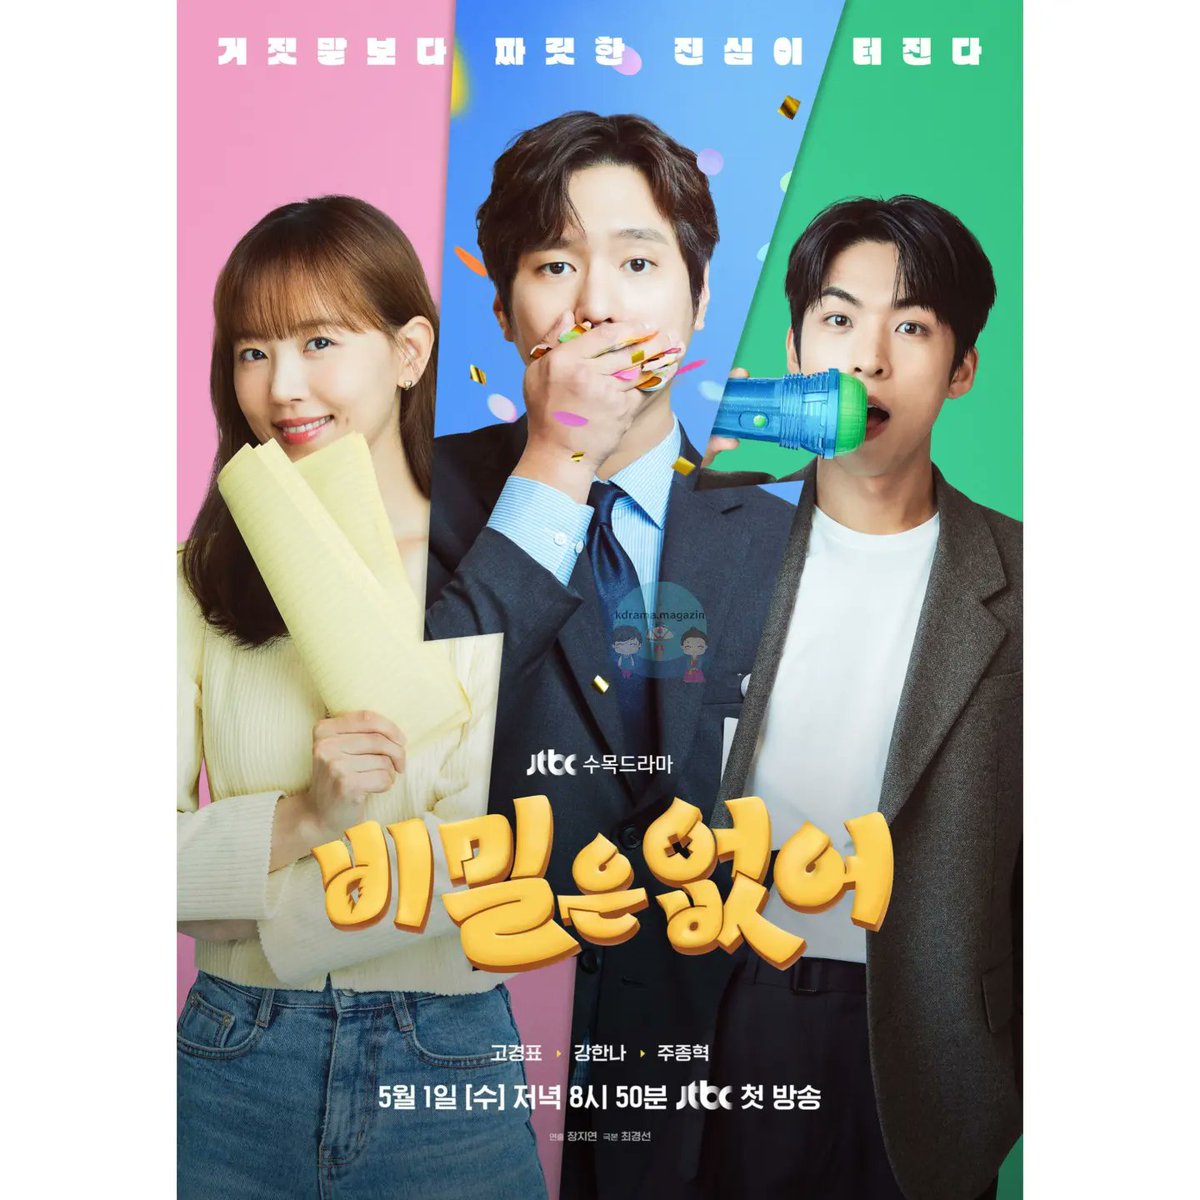 JTBC Draması #FranklySpeaking İçin Poster Yayınlandı.

🗓1 Mayıs'ta yayınlanacak.

#GoKyungPyo #KangHanNa #JooJongHyuk #고경표 #강한나 #주종혁 #비밀은없어 #NoSecret